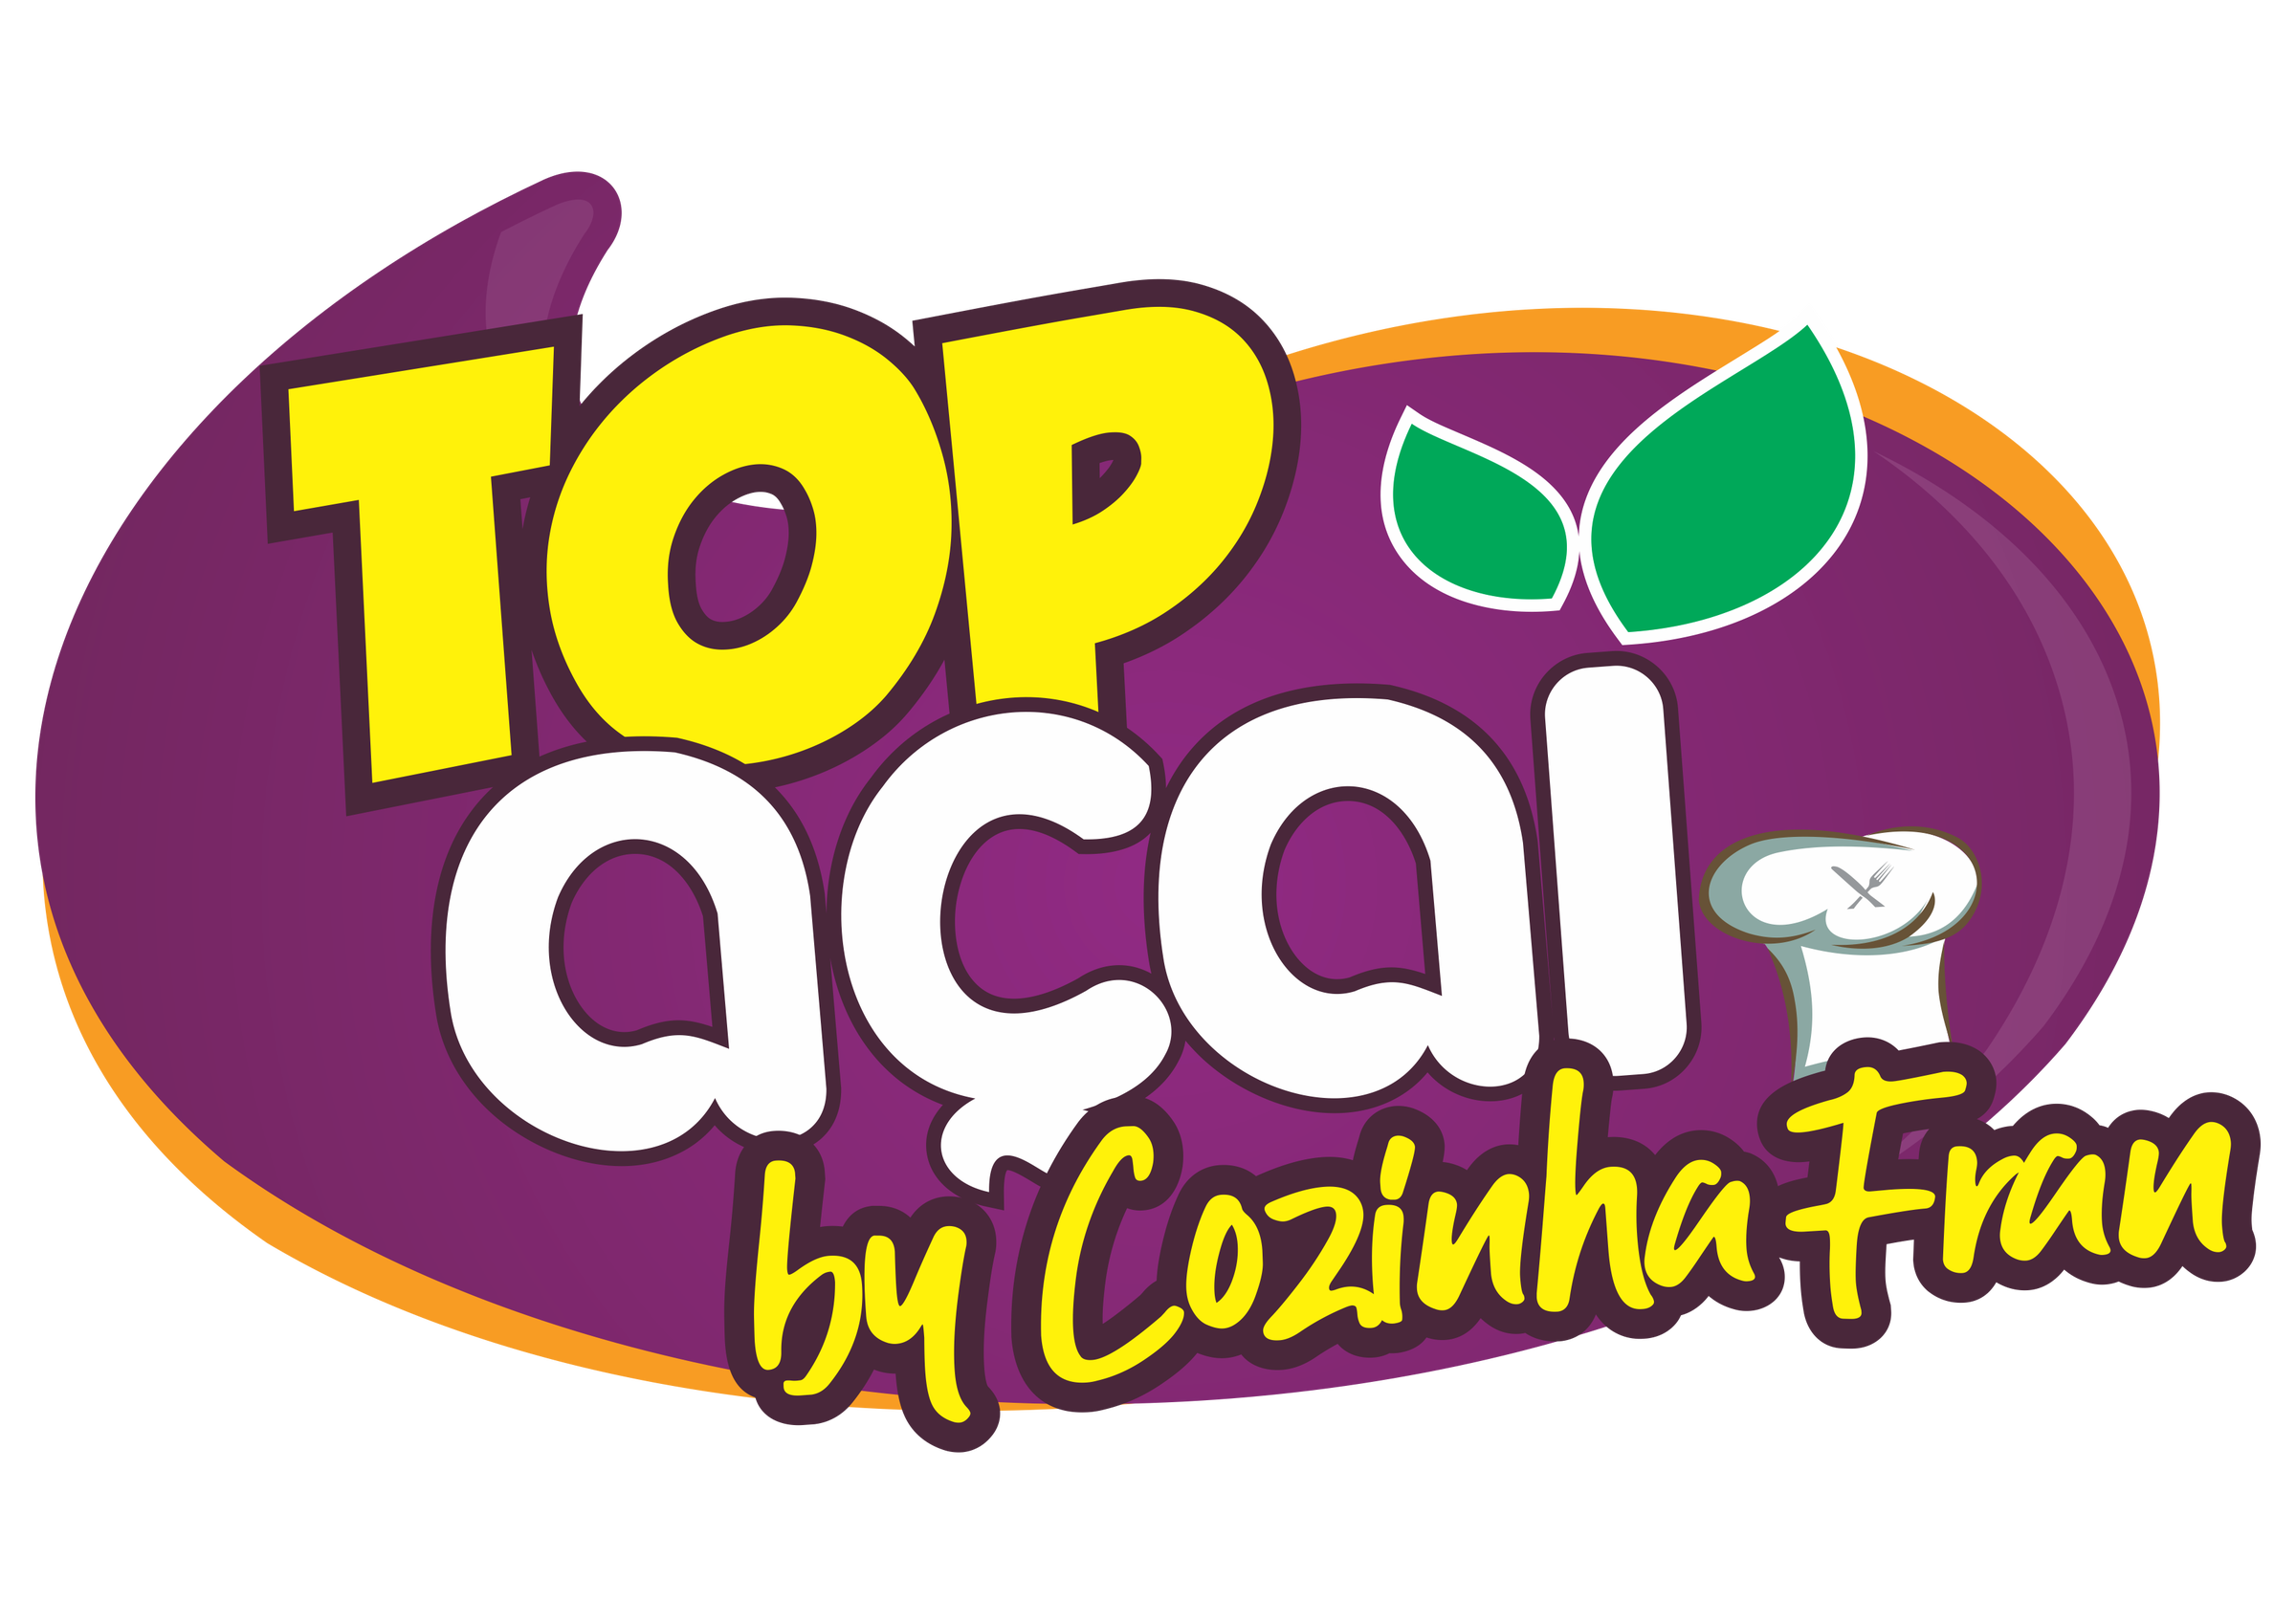 TopZera Açaí - Encontre Fácil e Compre Bem